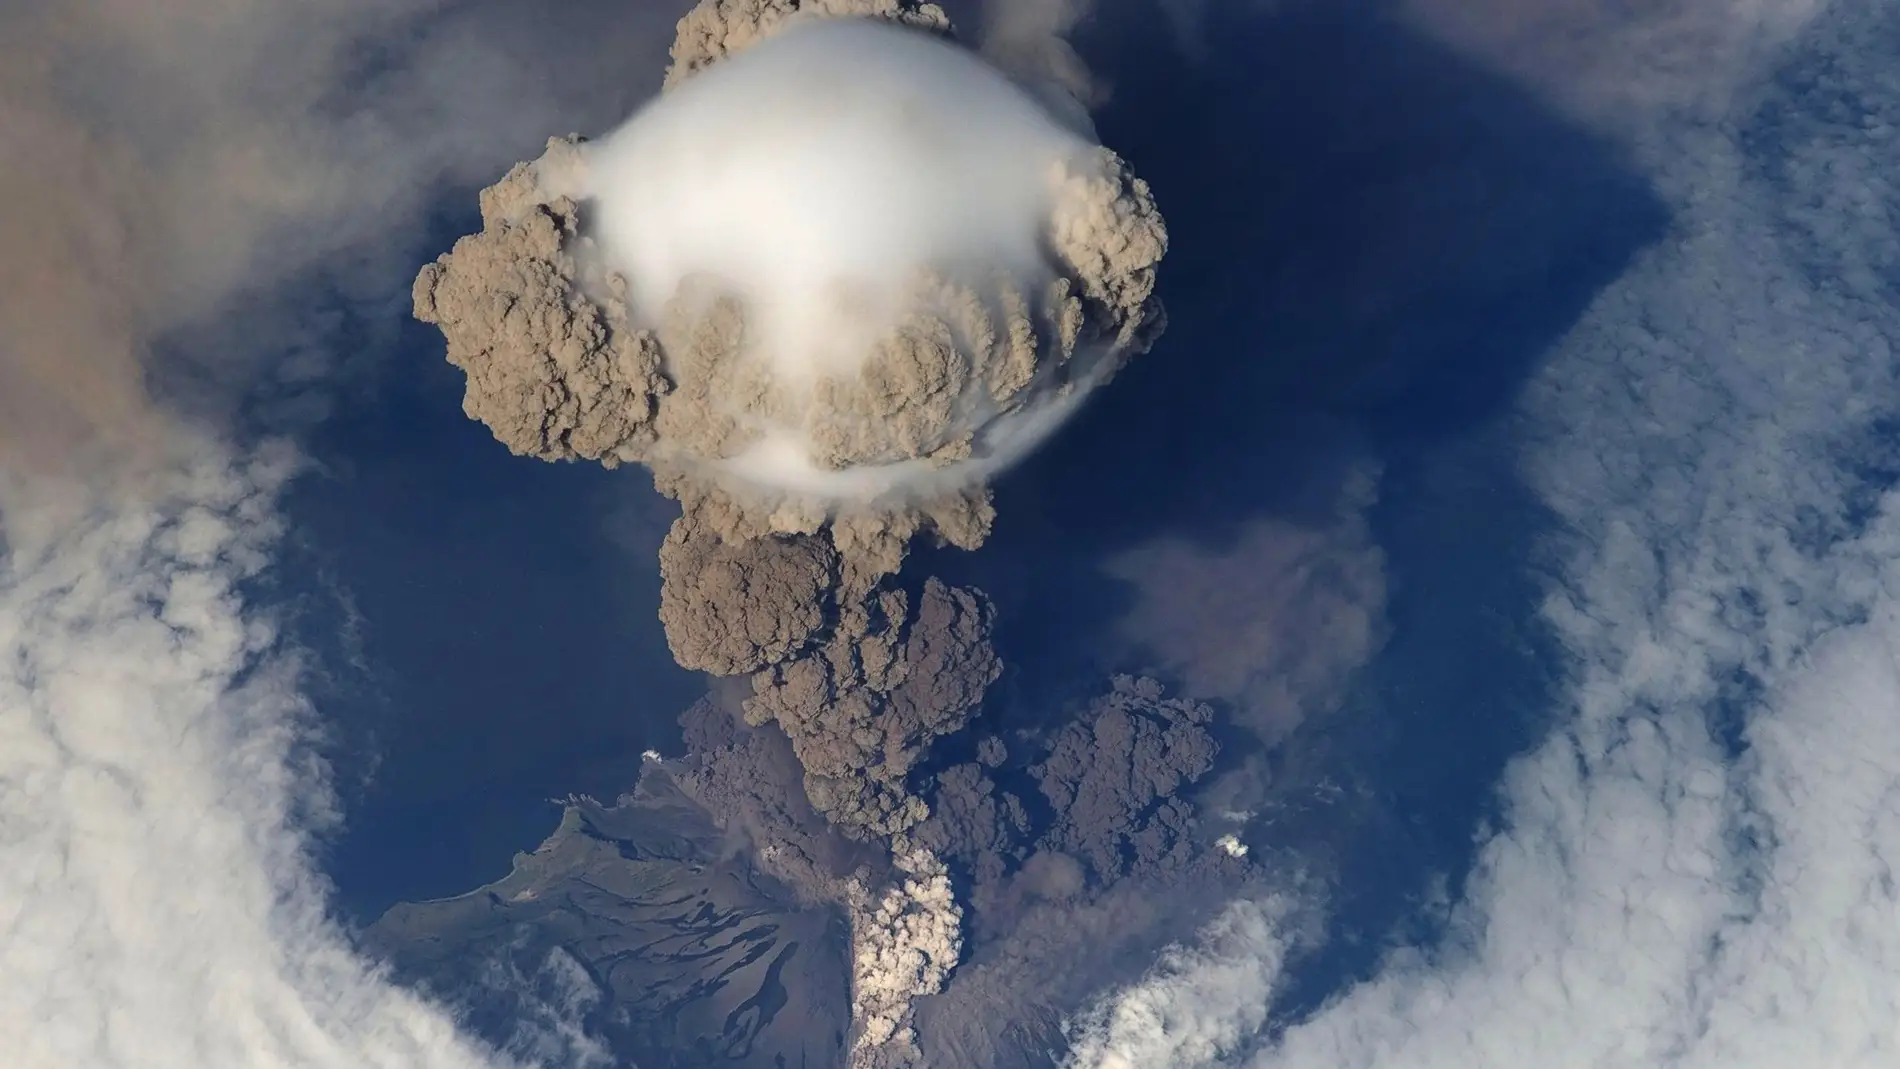 Los gases que expulsa un supervolcán podrían cambiar el clima del planeta